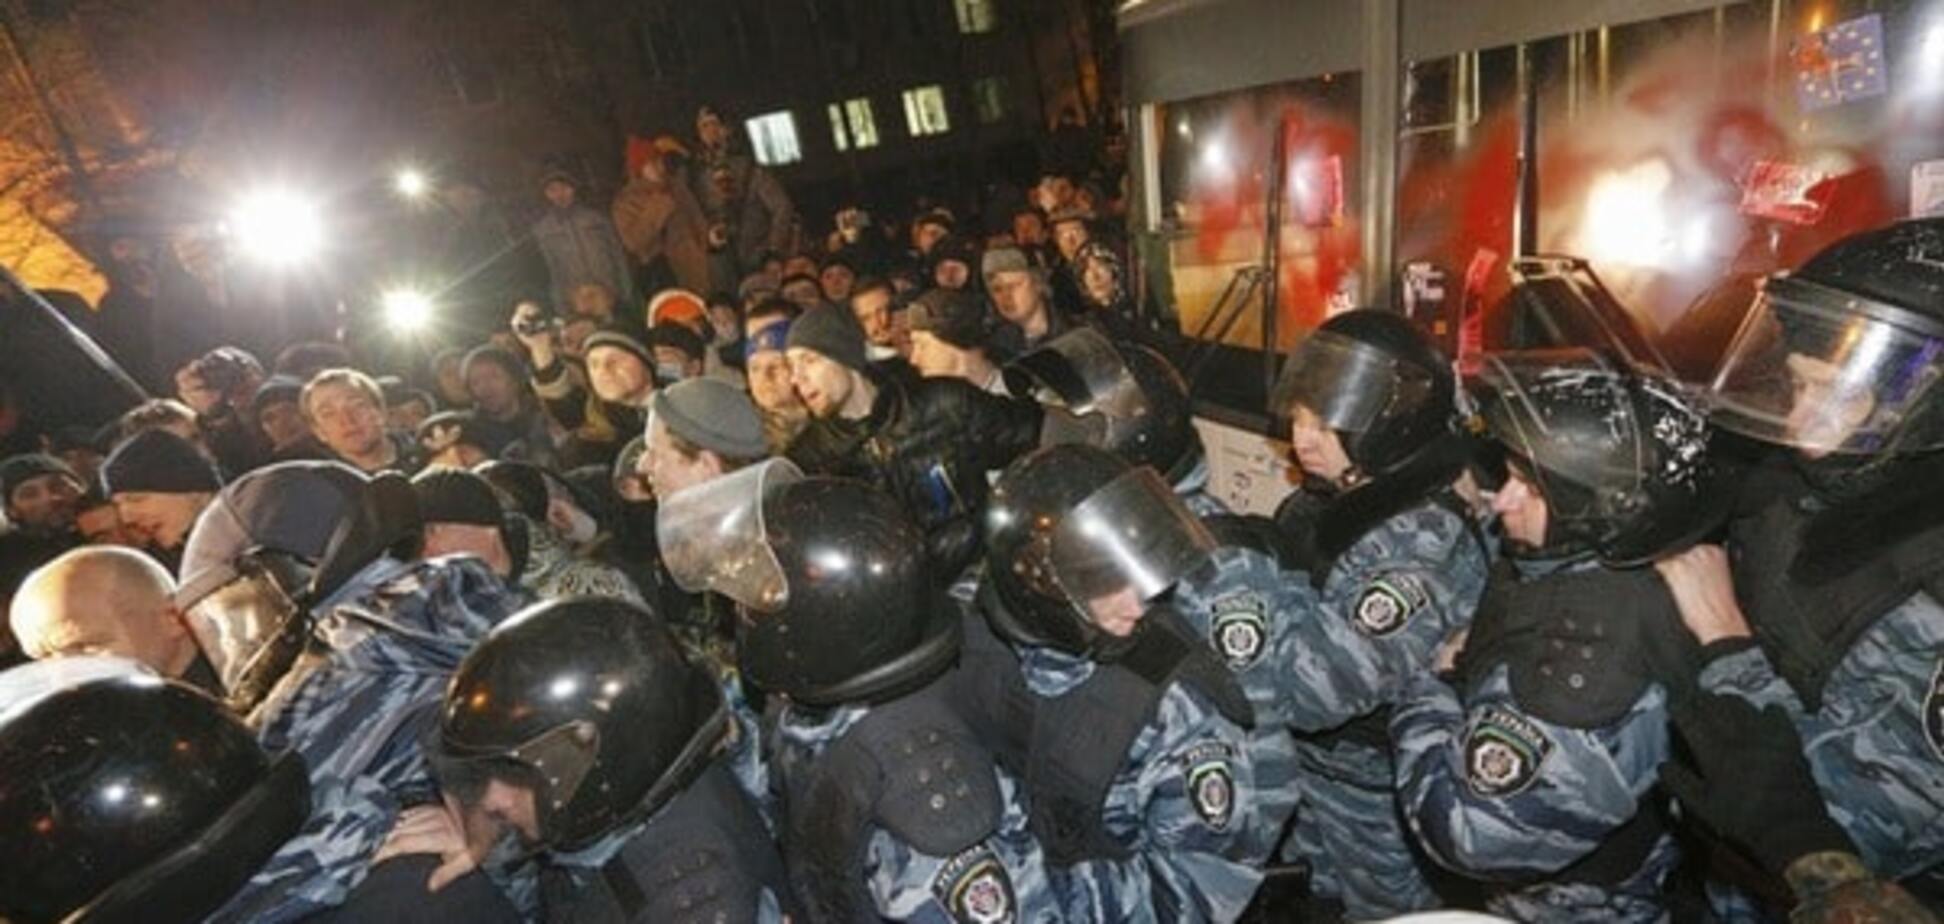 Розгін Майдану: 'беркутівці', які били студентів до сих пір працюють в МВС - адвокат